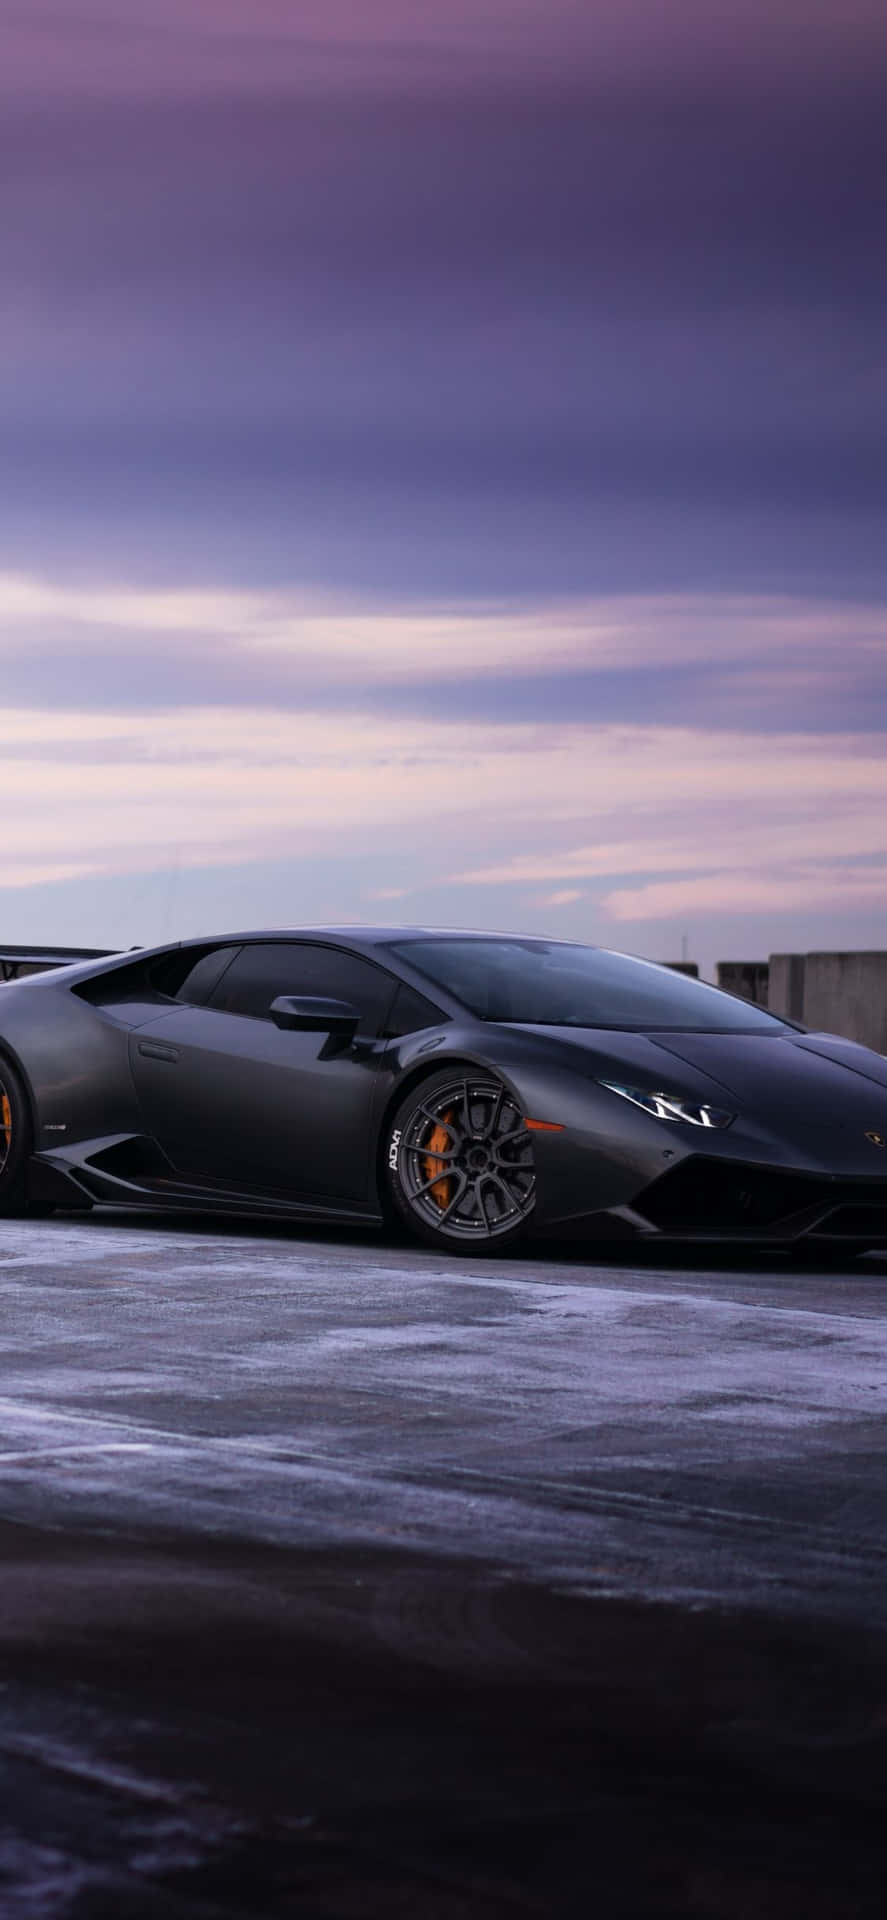 Ensvart Lamborghini Parkerad På En Snöig Väg Wallpaper